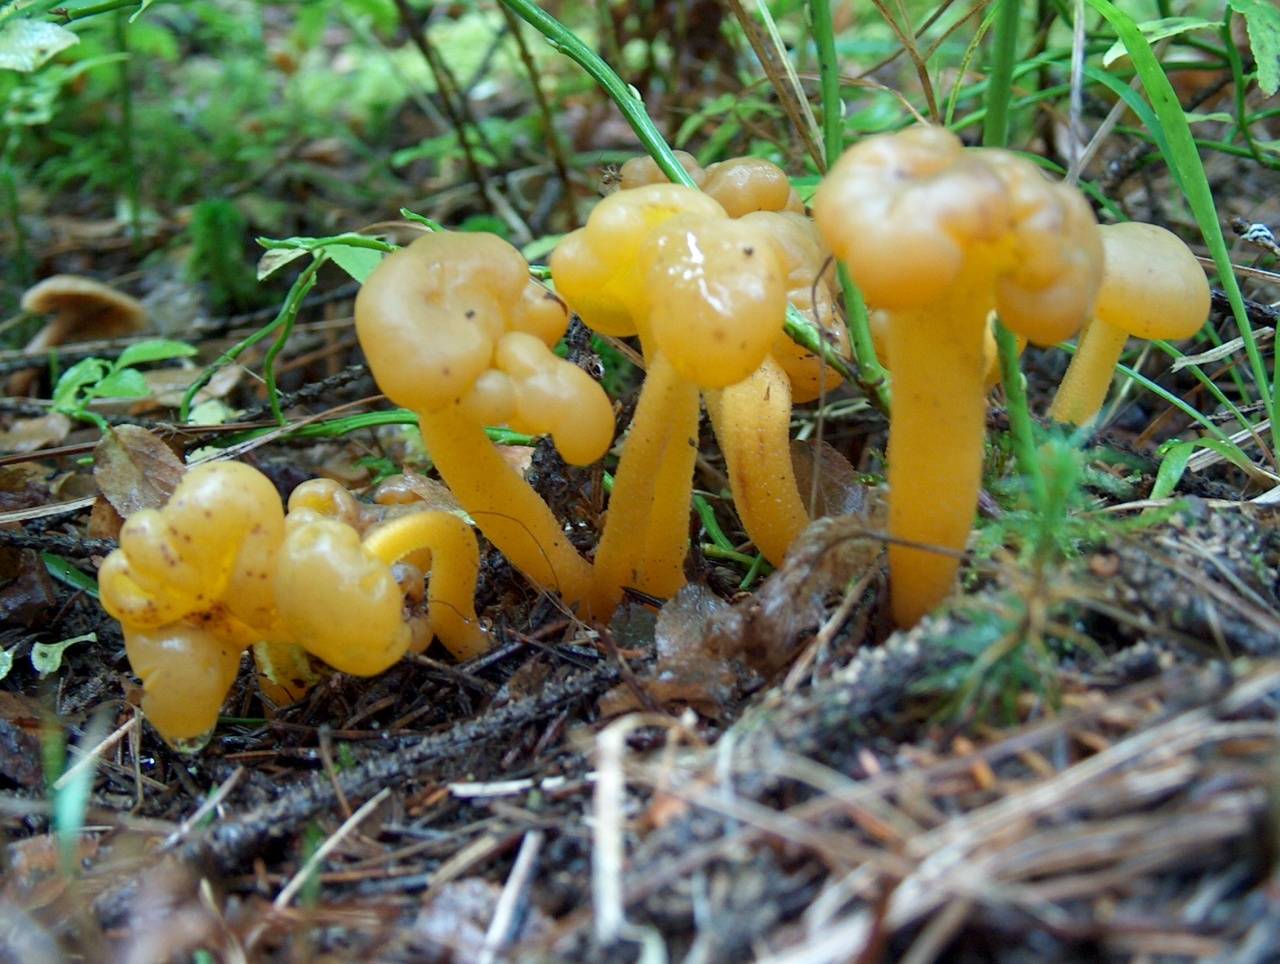 Псевдоежовик студенистый или ложноежовик (pseudohydnum gelatinosum): фото и описание гриба